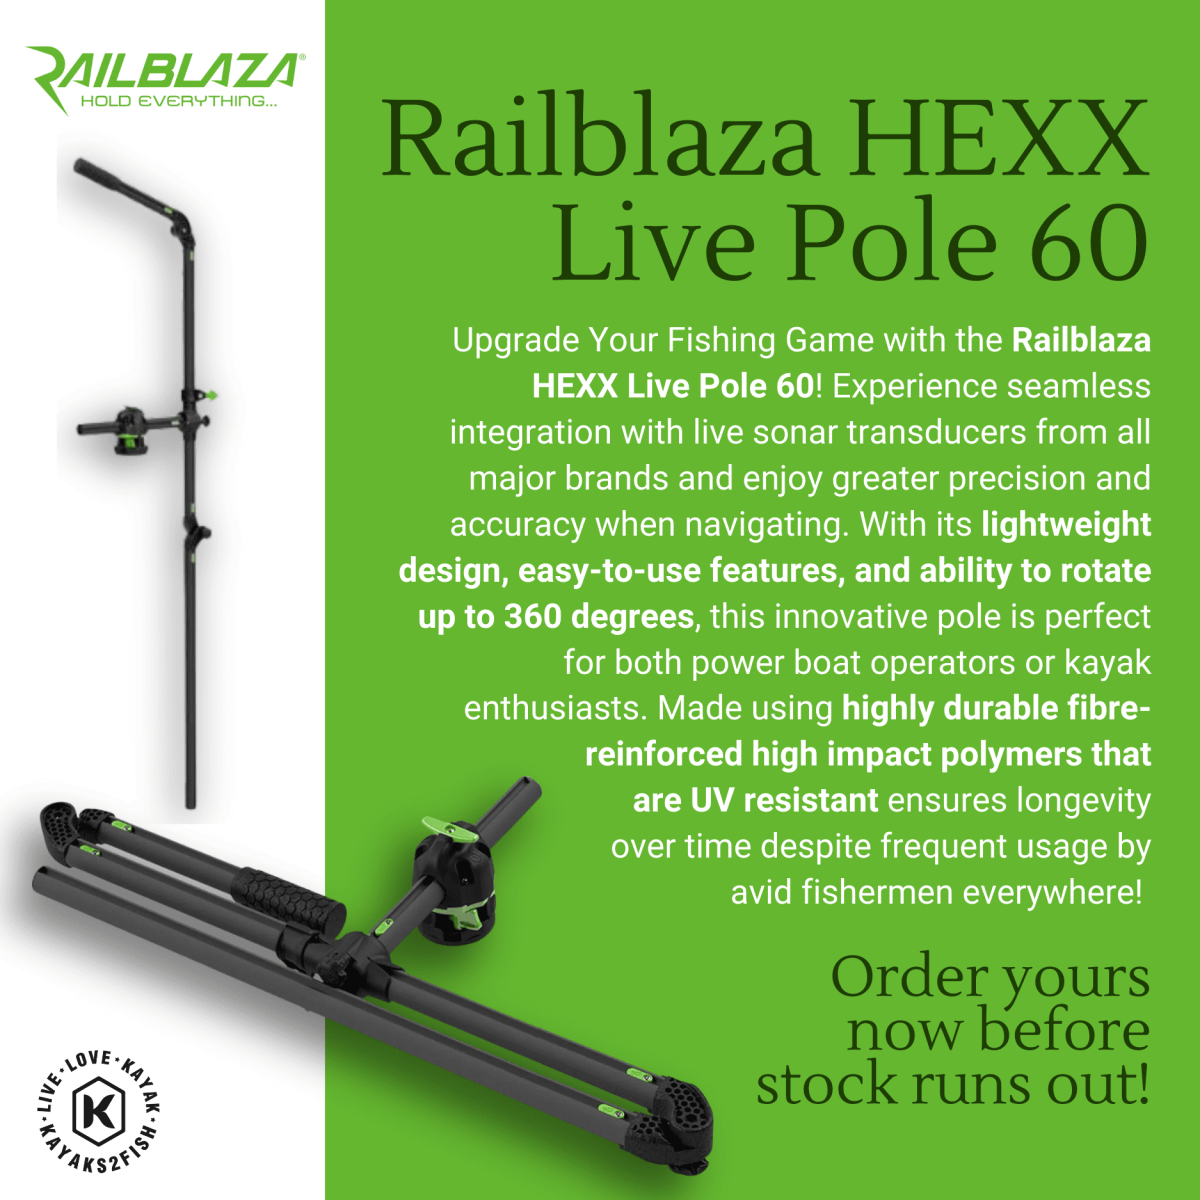 Railblaza HEXX Live Pole 60